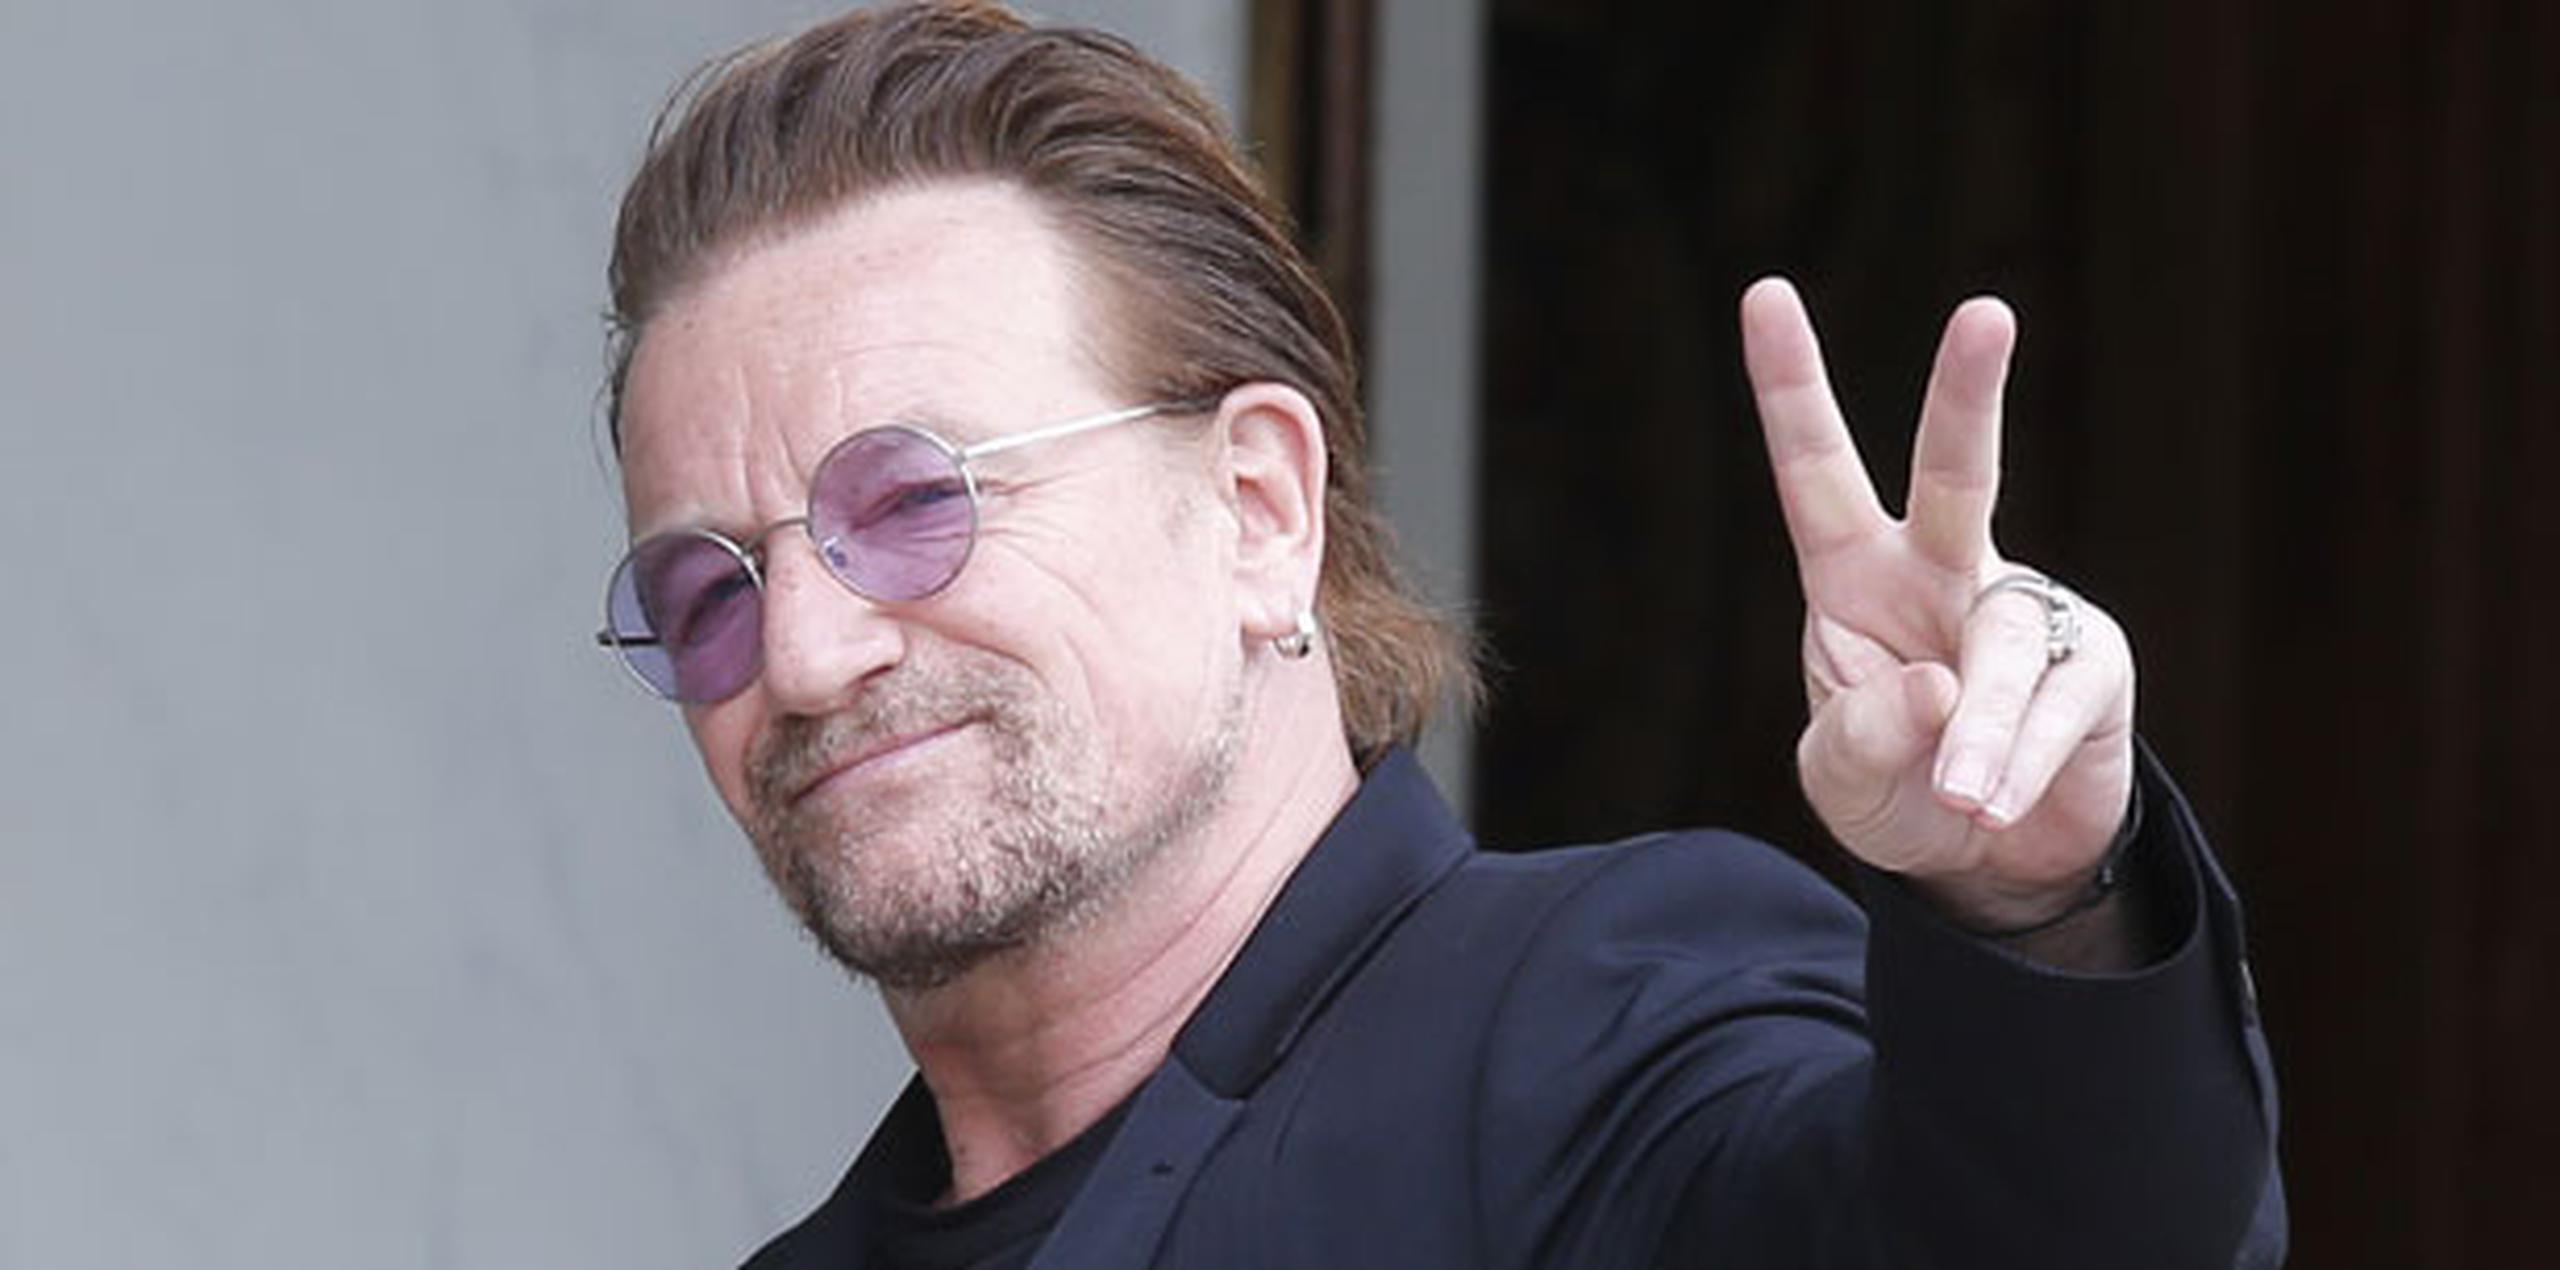 Según un reporte publicado por la agencia alemana dpa el domingo, Bono pudo seguir cantando el tema "Beautiful Day" con la ayuda del público. (AP)